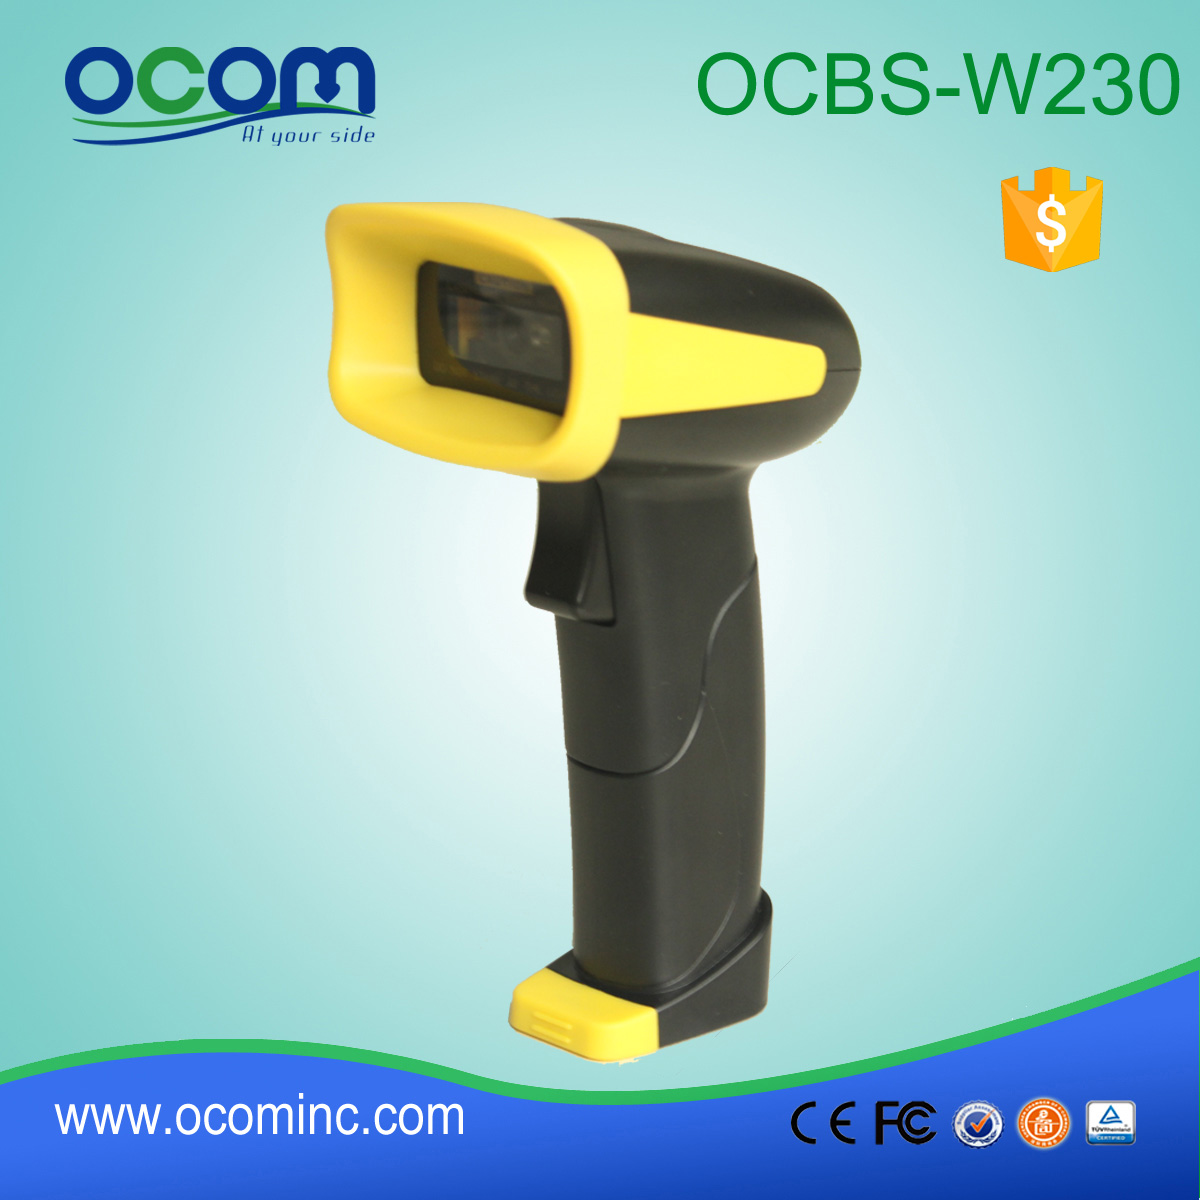 OCBs-W230 Long Distance Ασύρματο Handheld QR Code Scanner Barcode